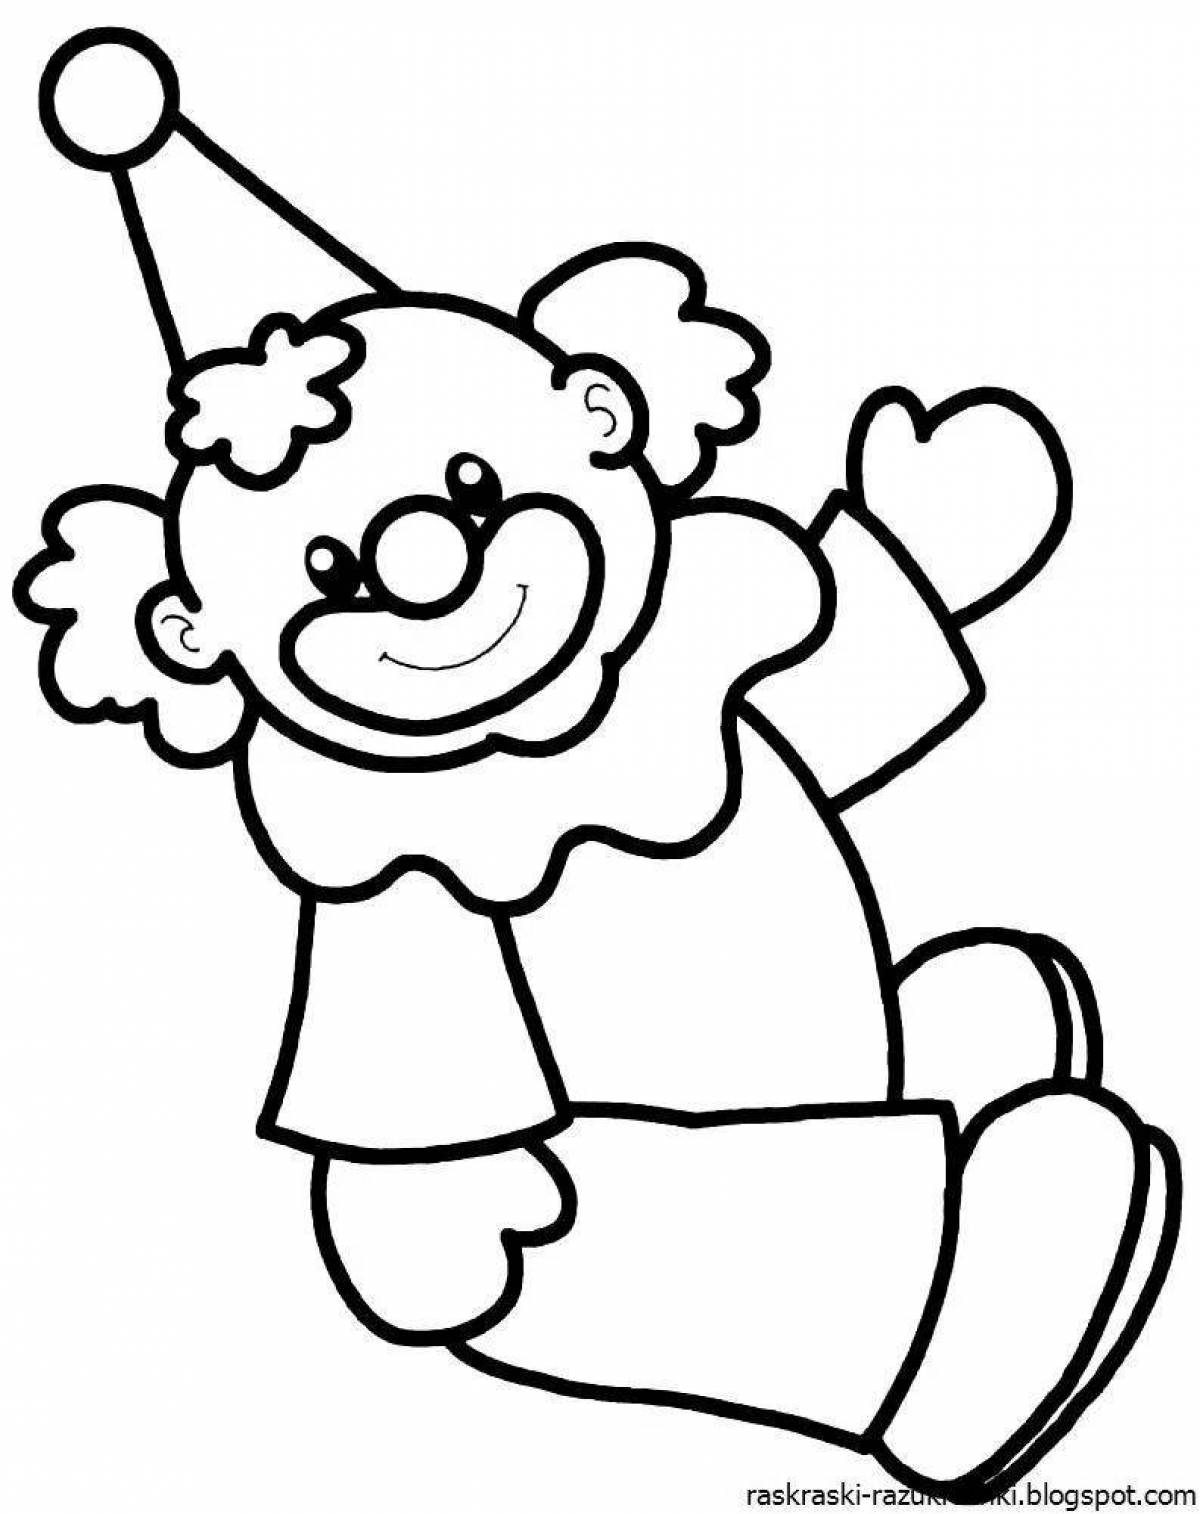 Клоун раскраска для детей 4 5 лет. Клоун раскраска. Клоун для раскрашивания детям. Клоун раскраска для детей. Клоун картинка для детей раскраска.